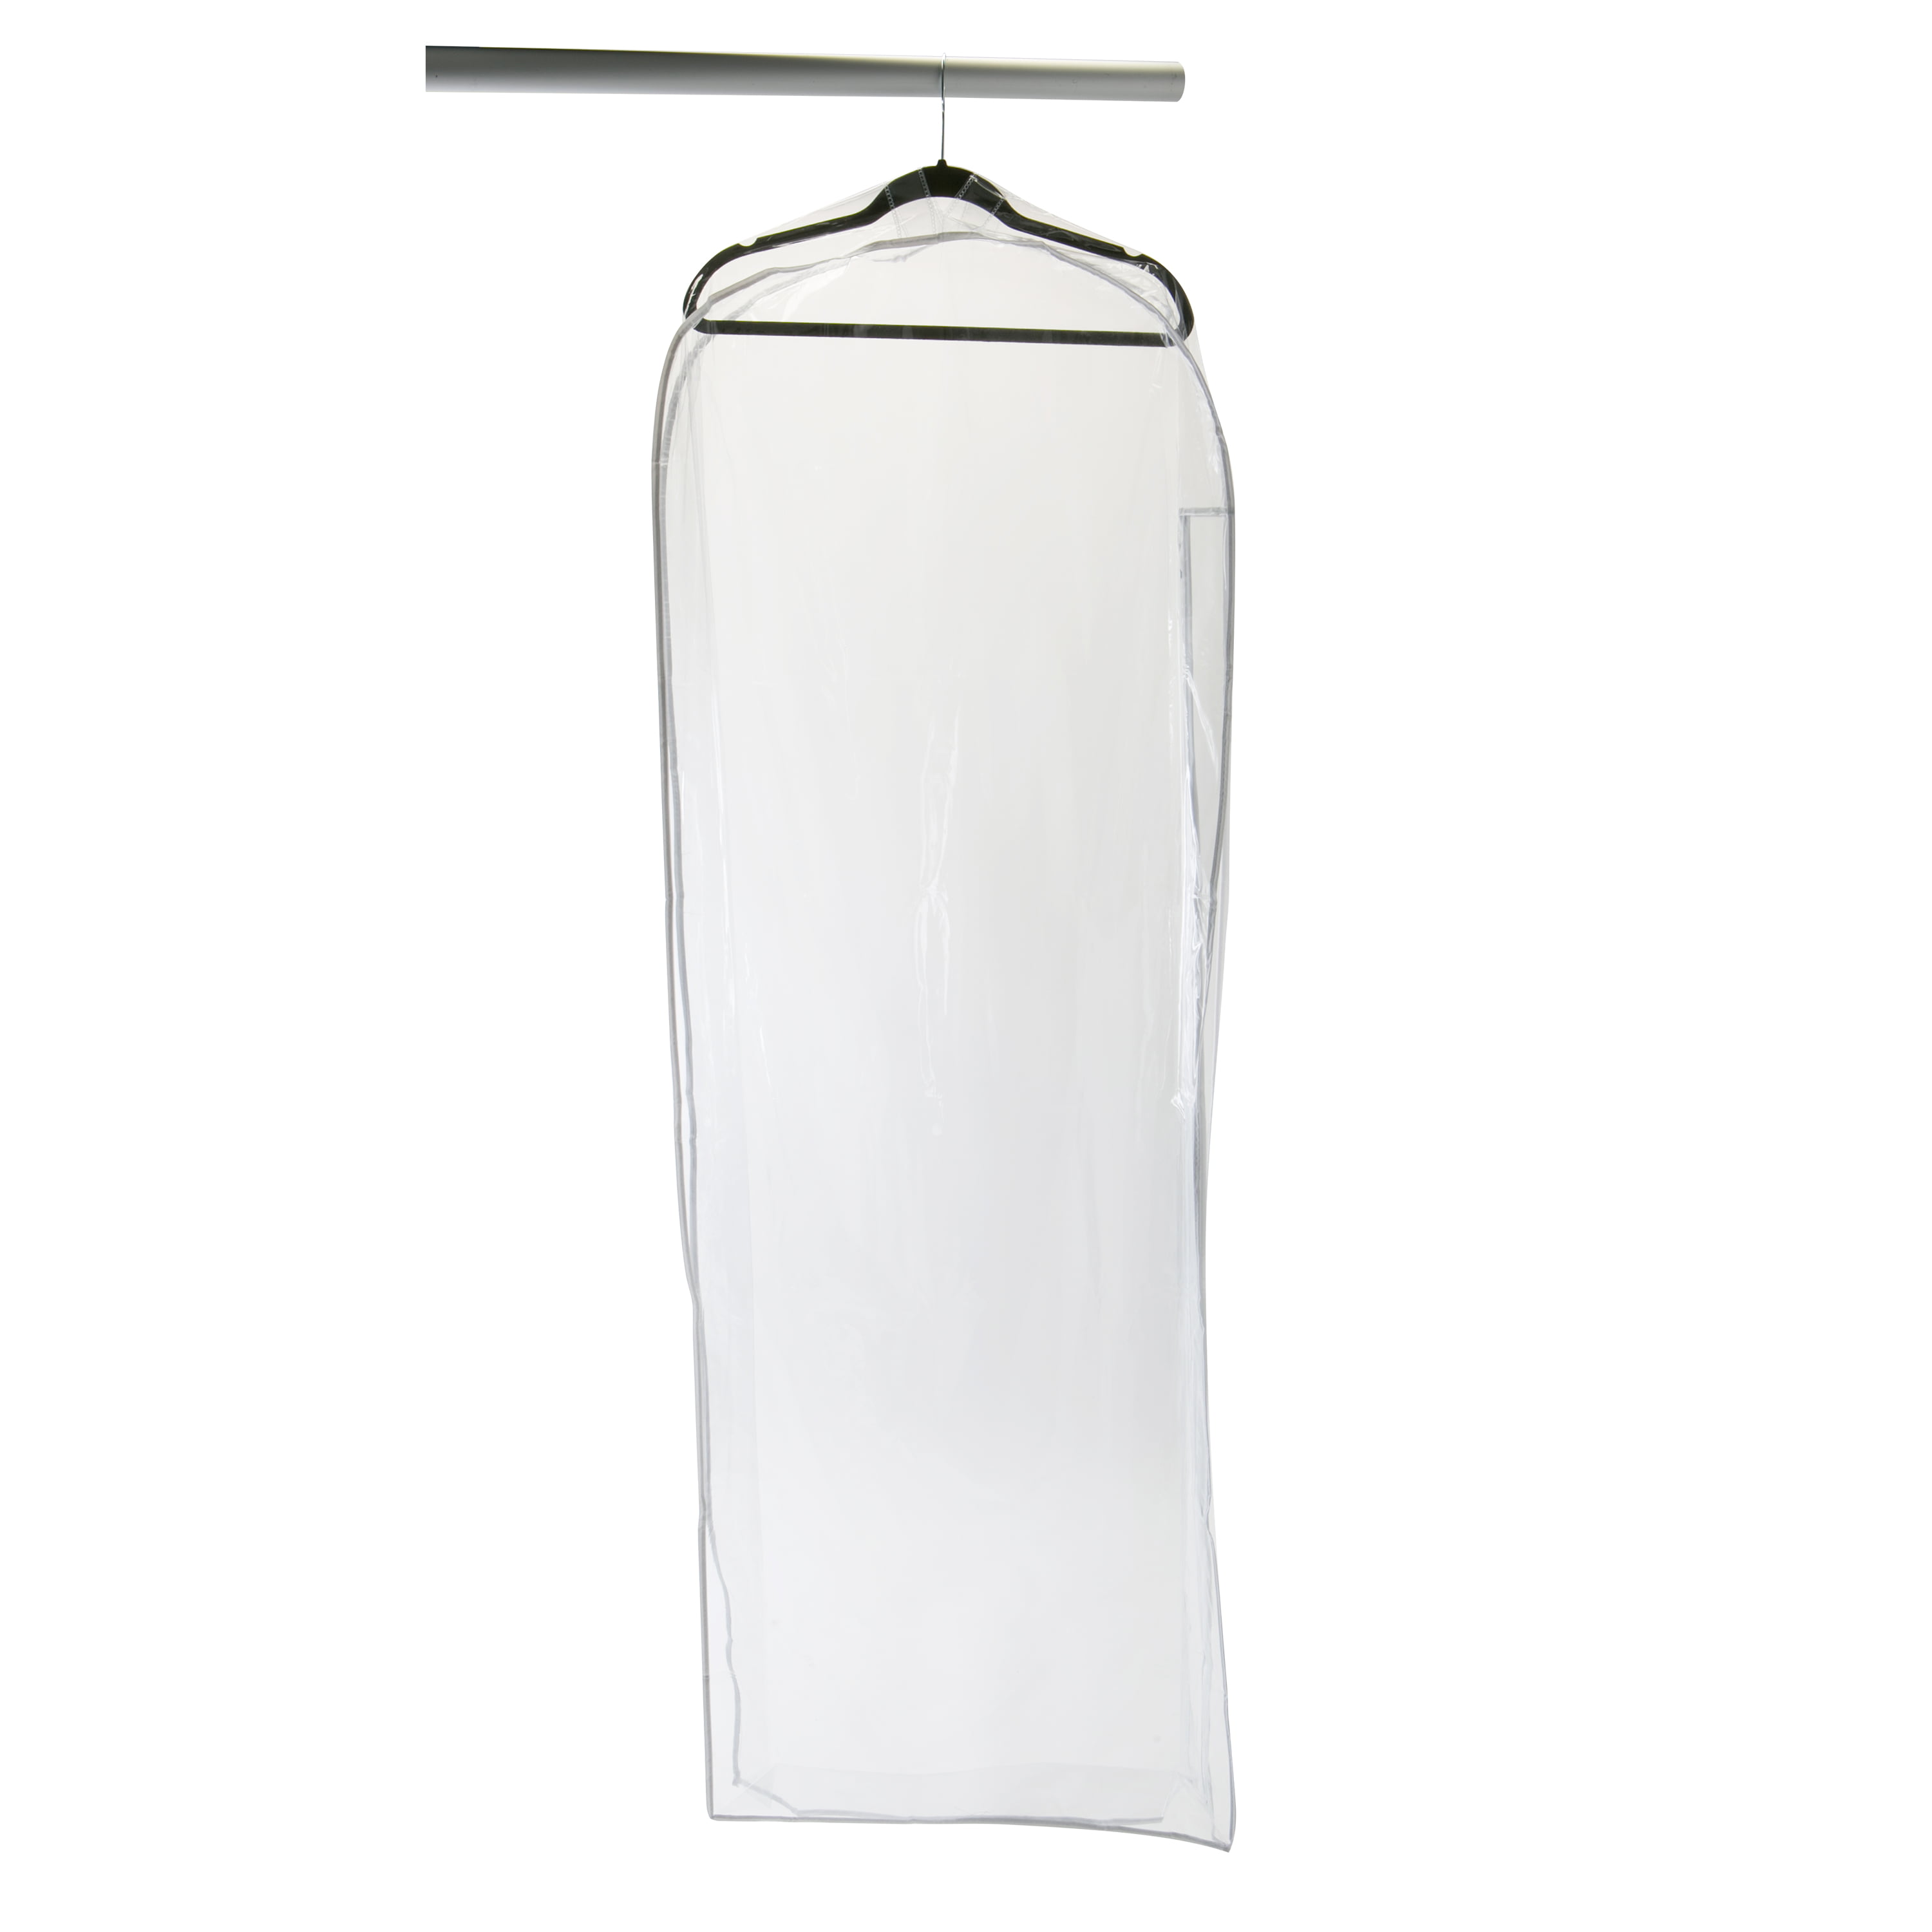 Simplify Crystal Clear Pvc Gown Garment Bag - Walmart.com